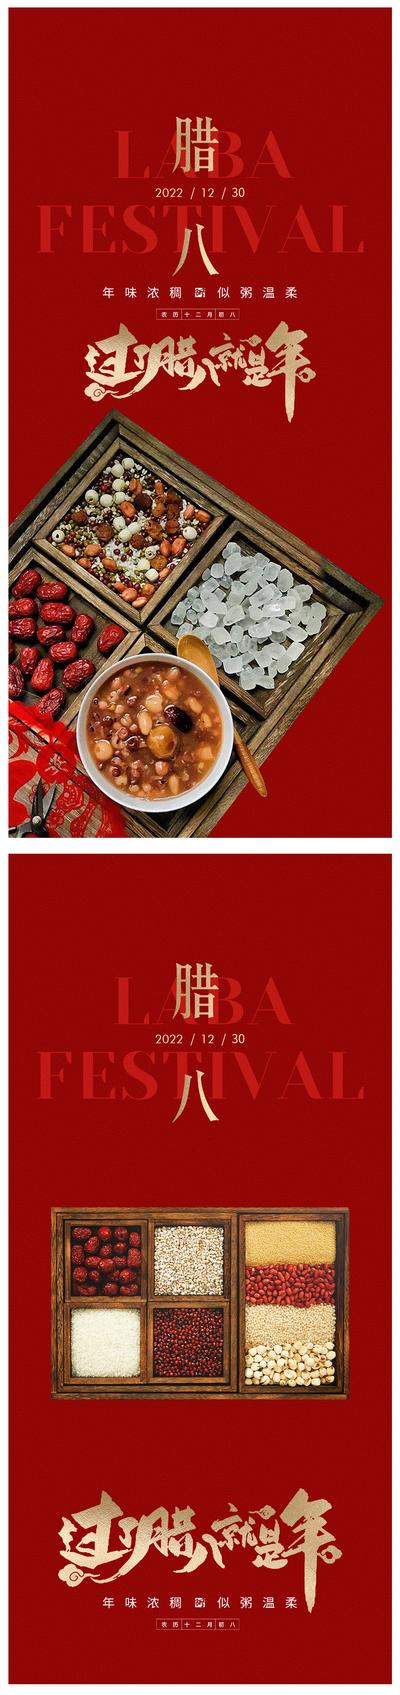 南门网 海报 中国传统节日 腊八节 八宝粥 五谷 红金